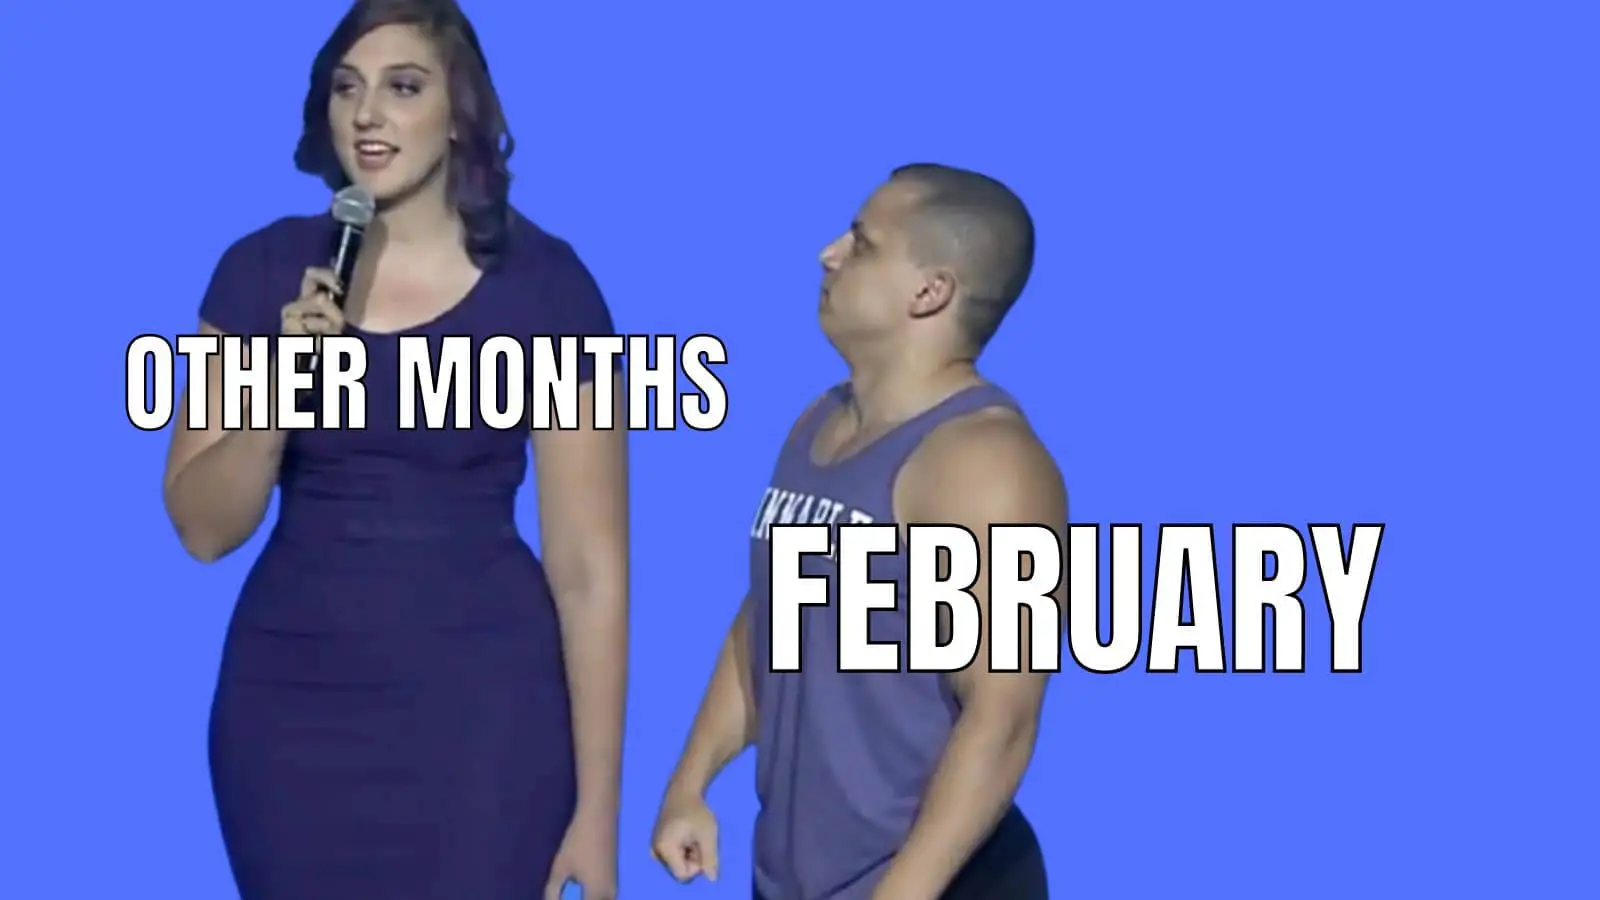 Funny February Jokes